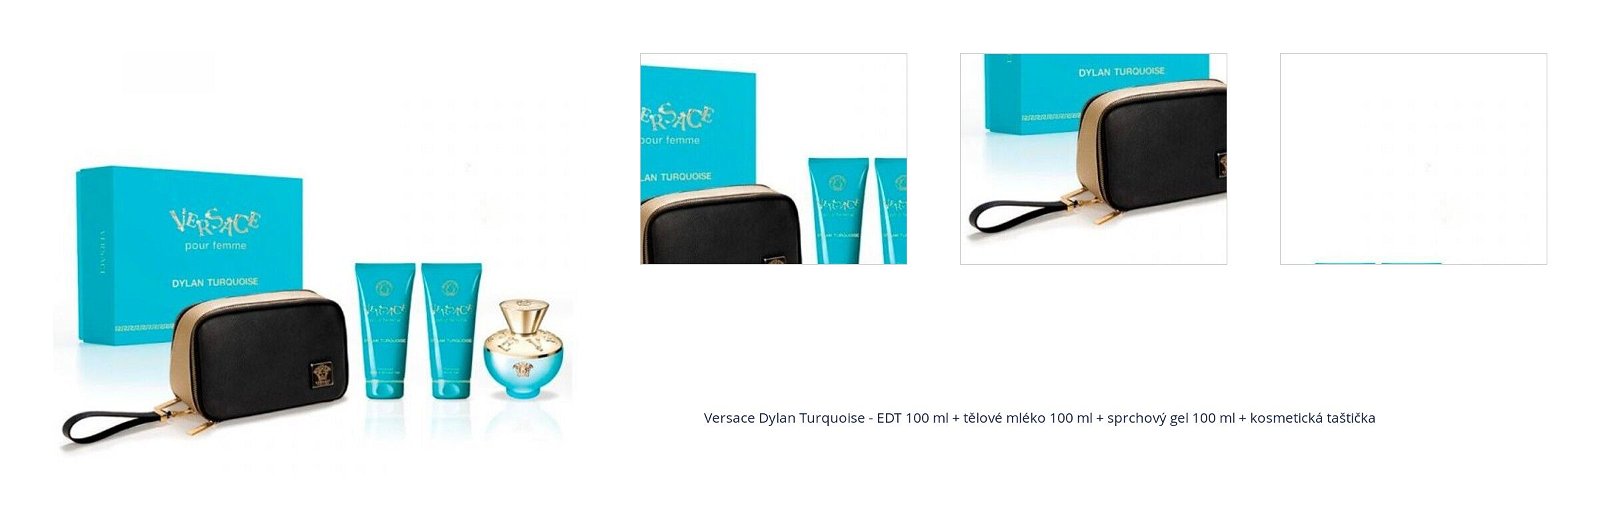 Versace Dylan Turquoise - EDT 100 ml + tělové mléko 100 ml + sprchový gel 100 ml + kosmetická taštička 1